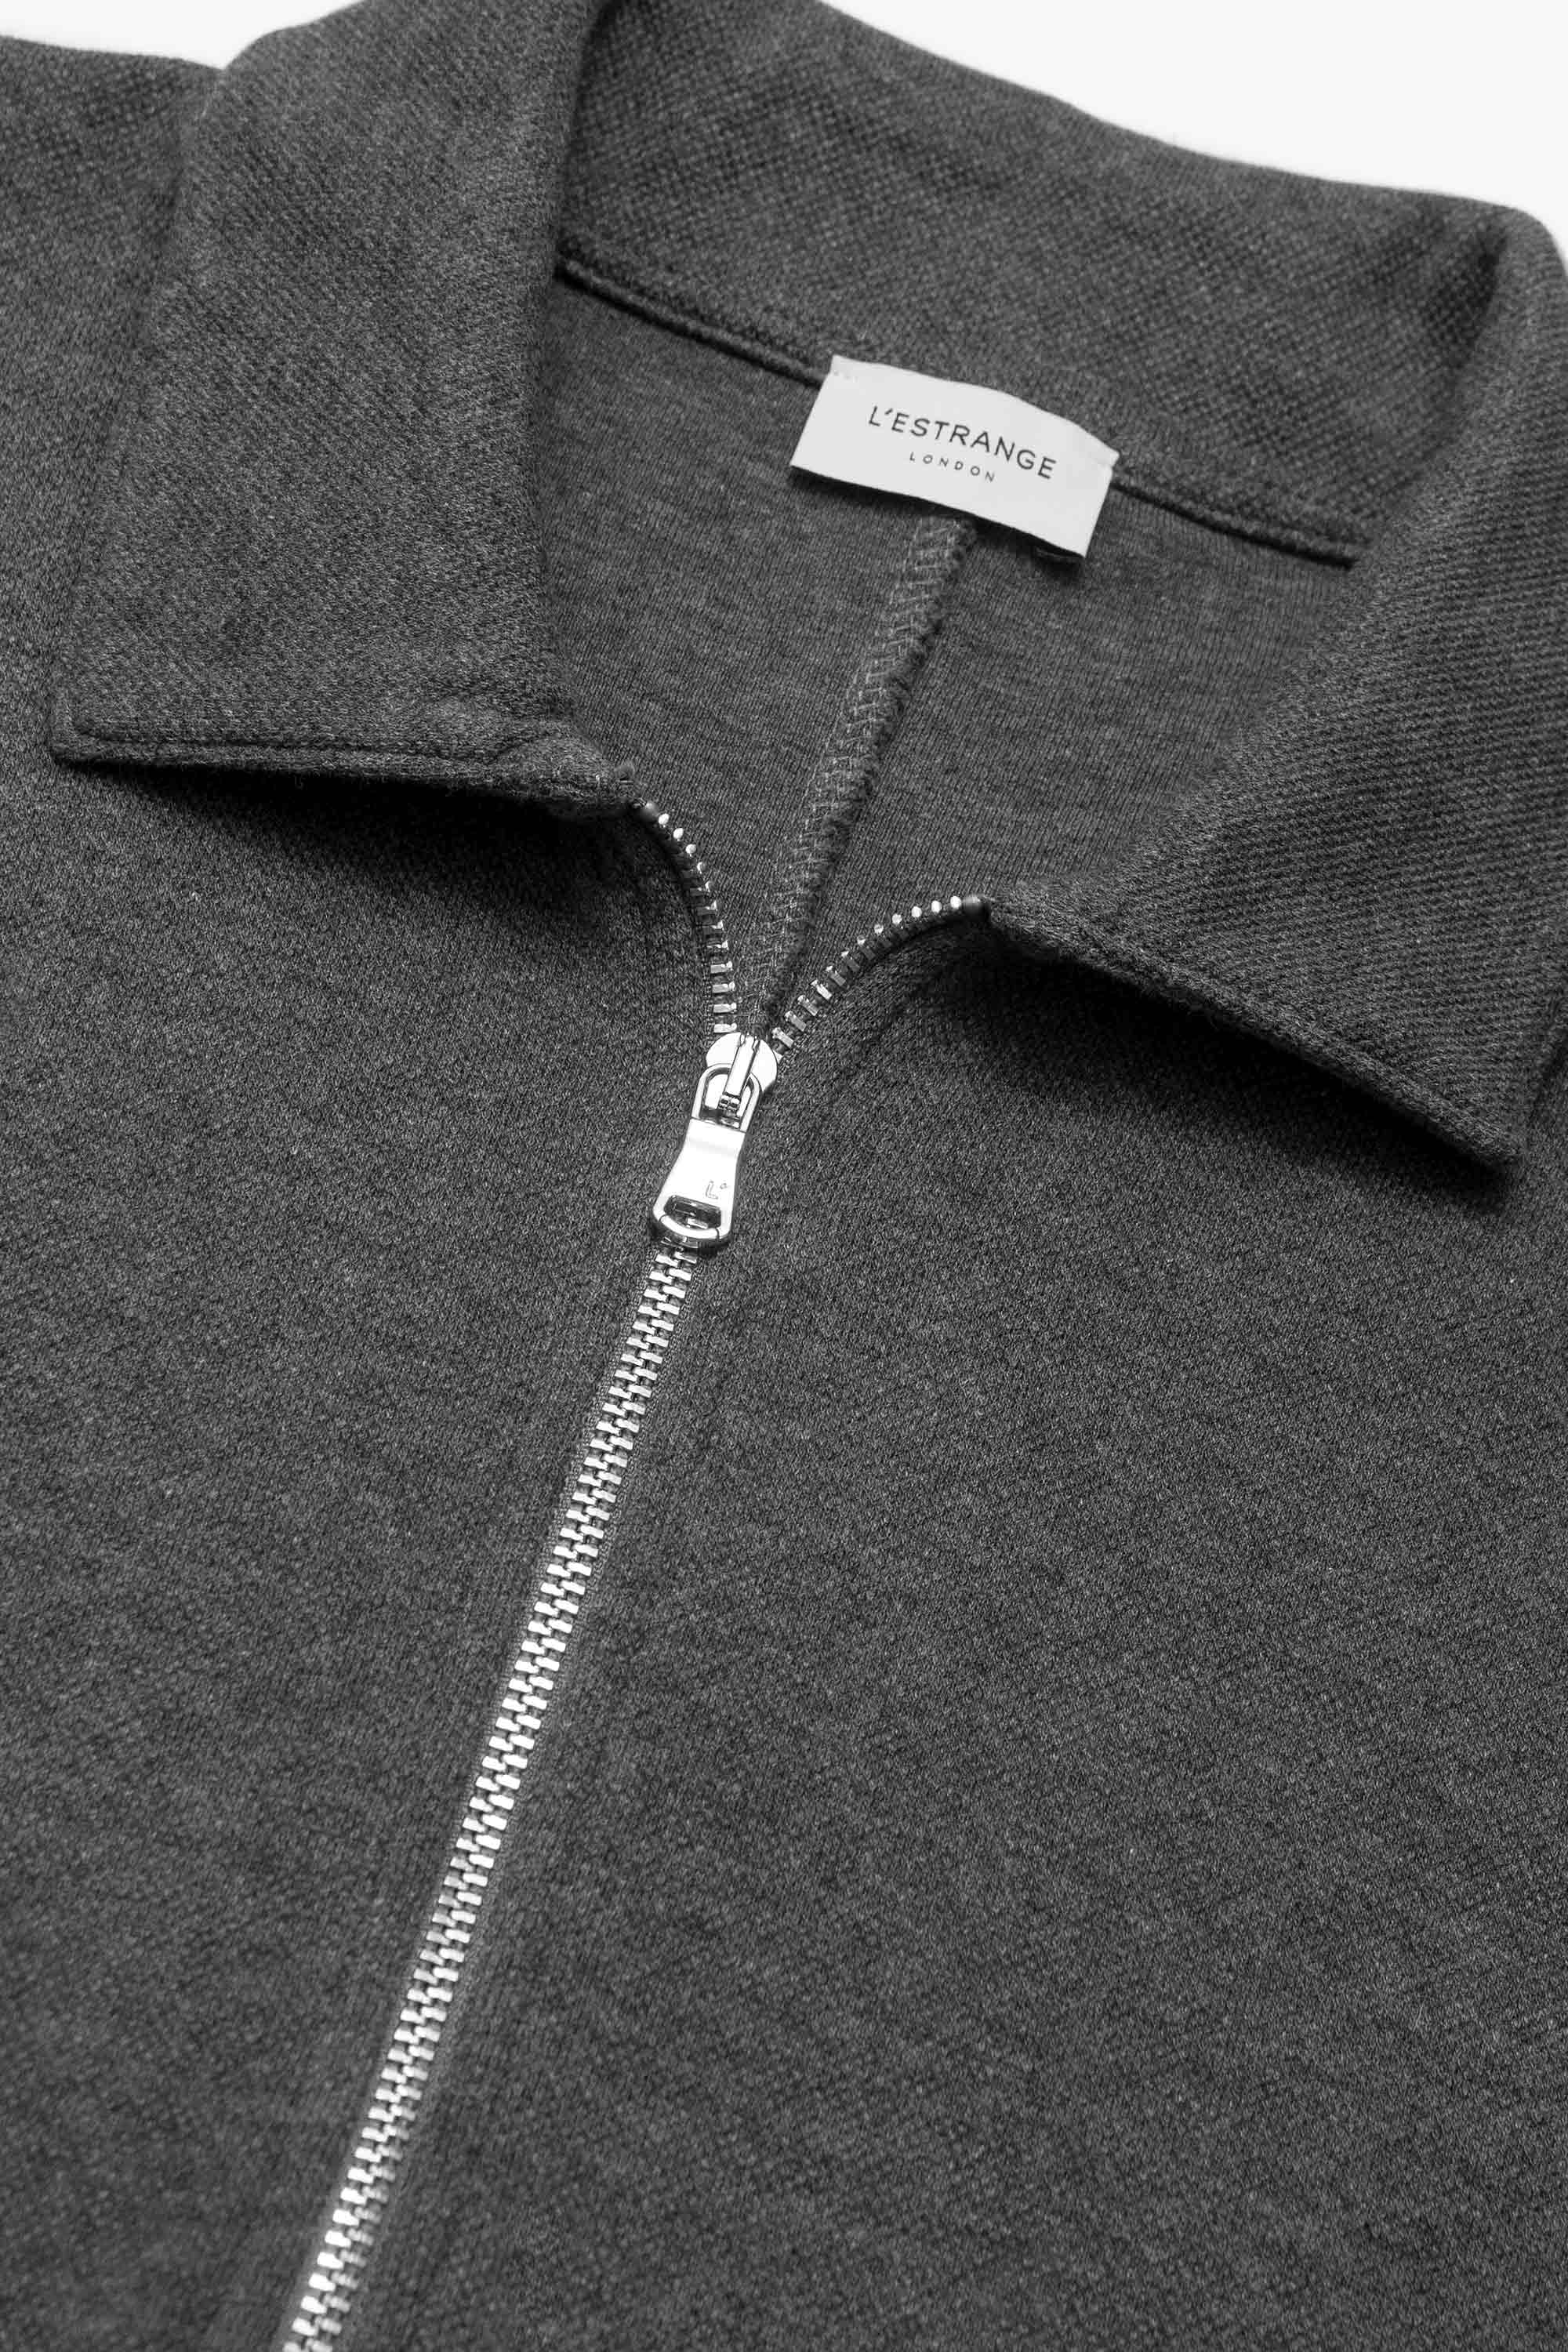 The Easy Zip Sweatshirt || Charcoal | Organic Cotton